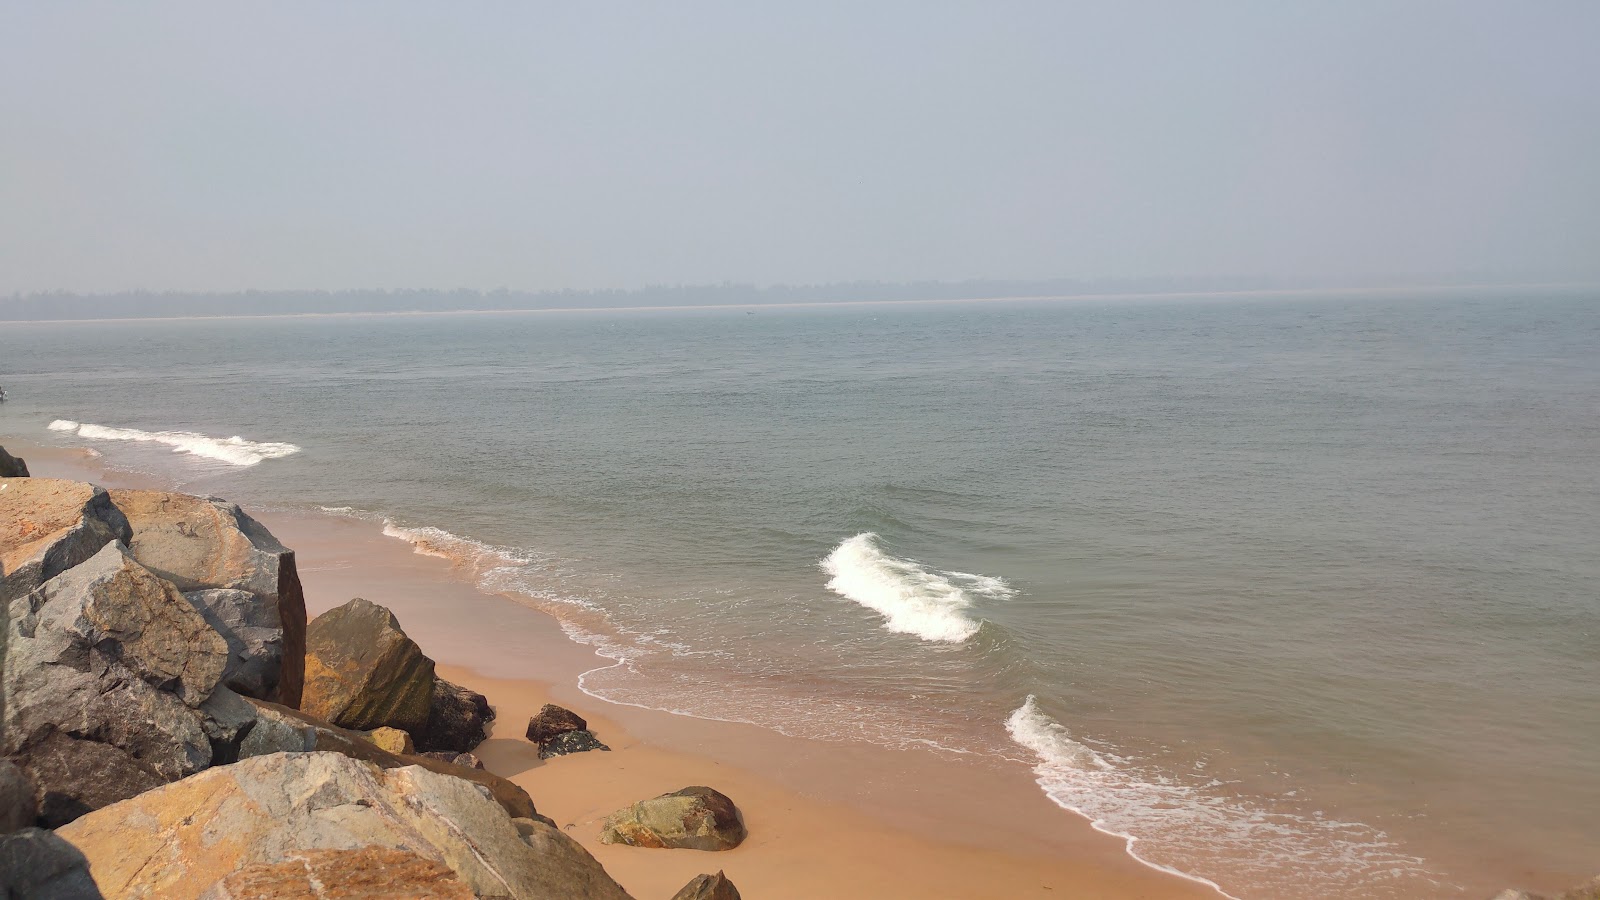 Foto de Nehru Bangala Sea Beach - lugar popular entre los conocedores del relax